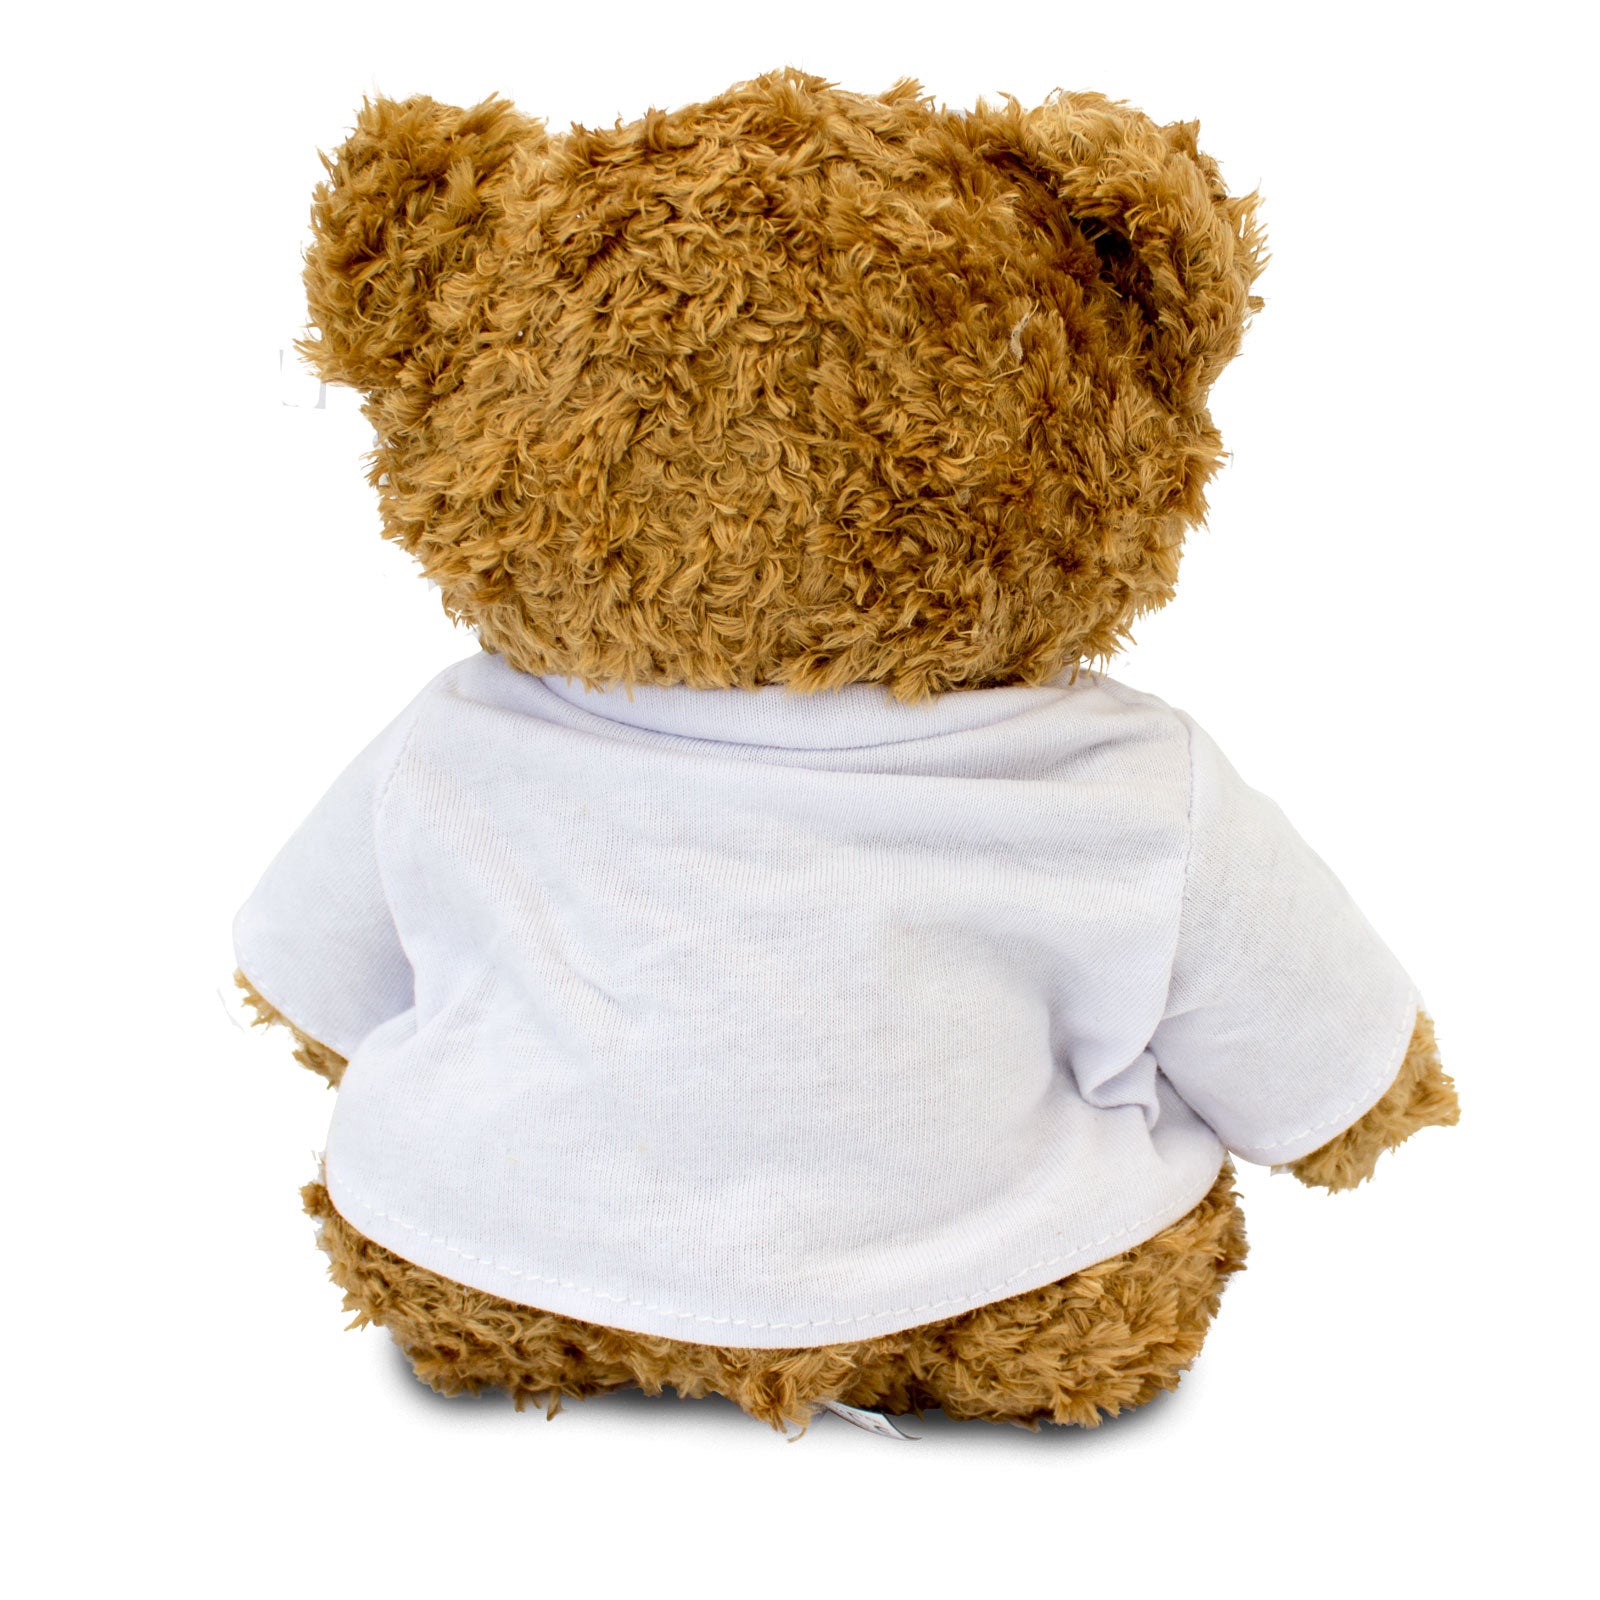 I Love Springer Spaniels - Teddy Bear